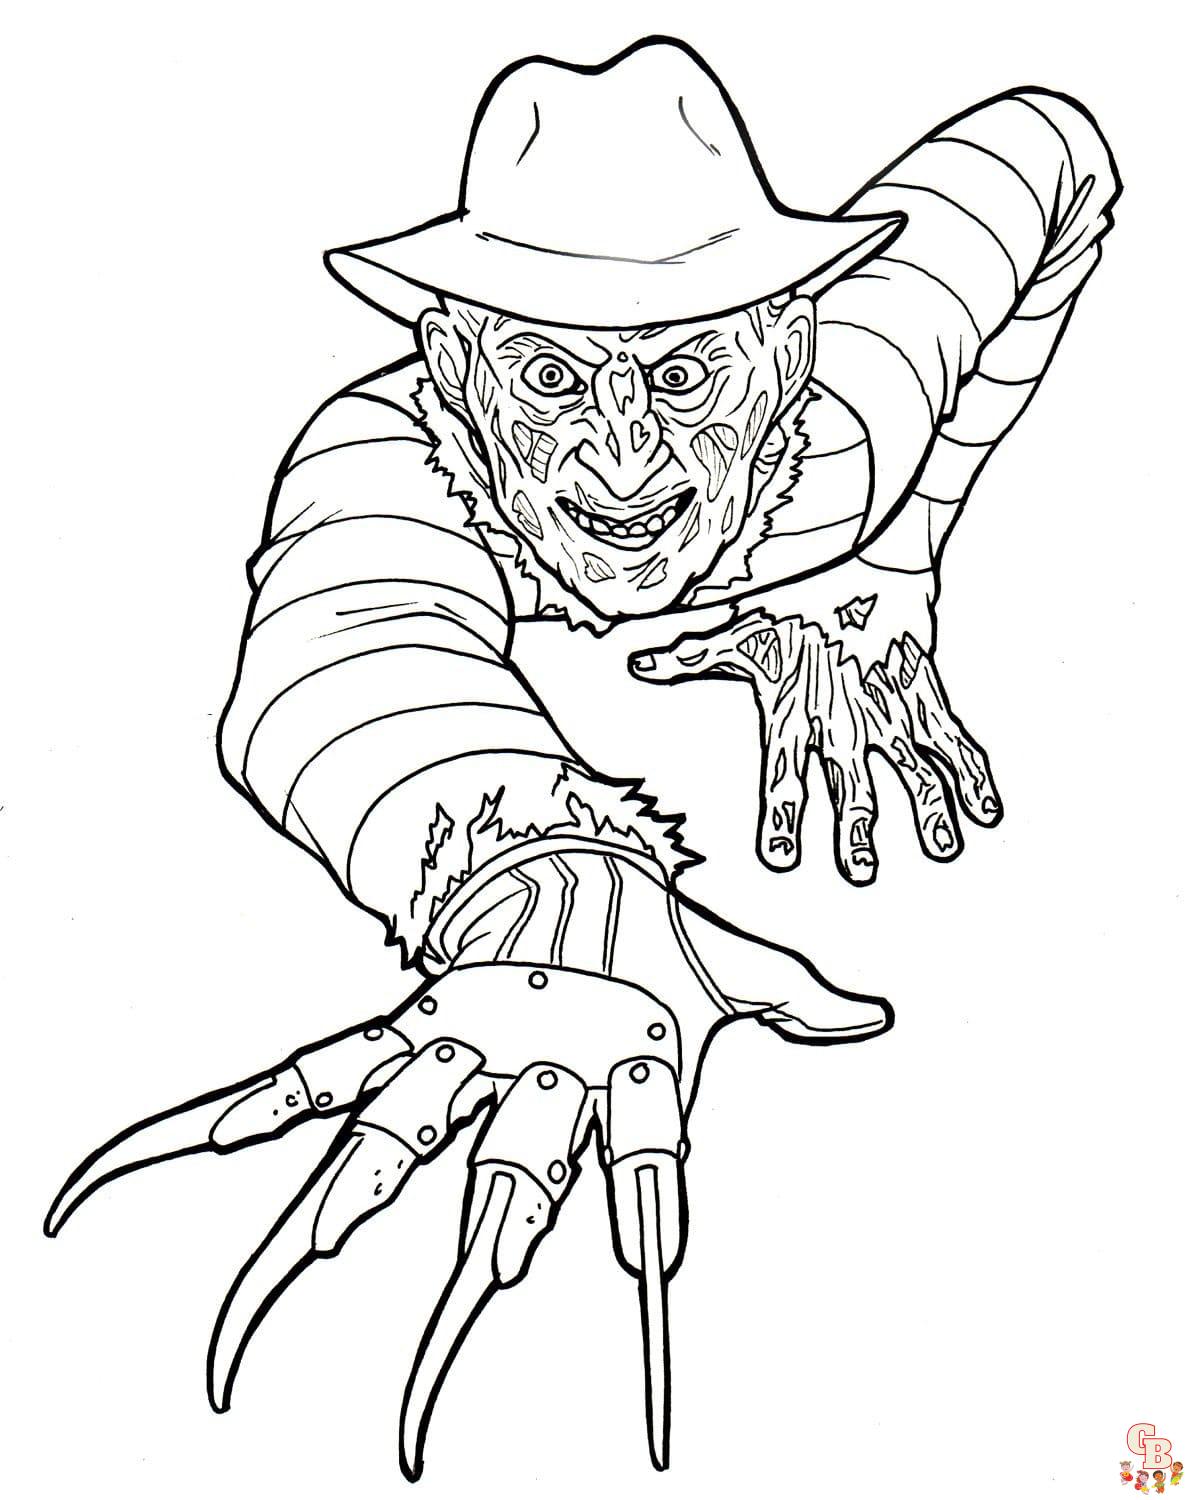 Freddy krueger dessin